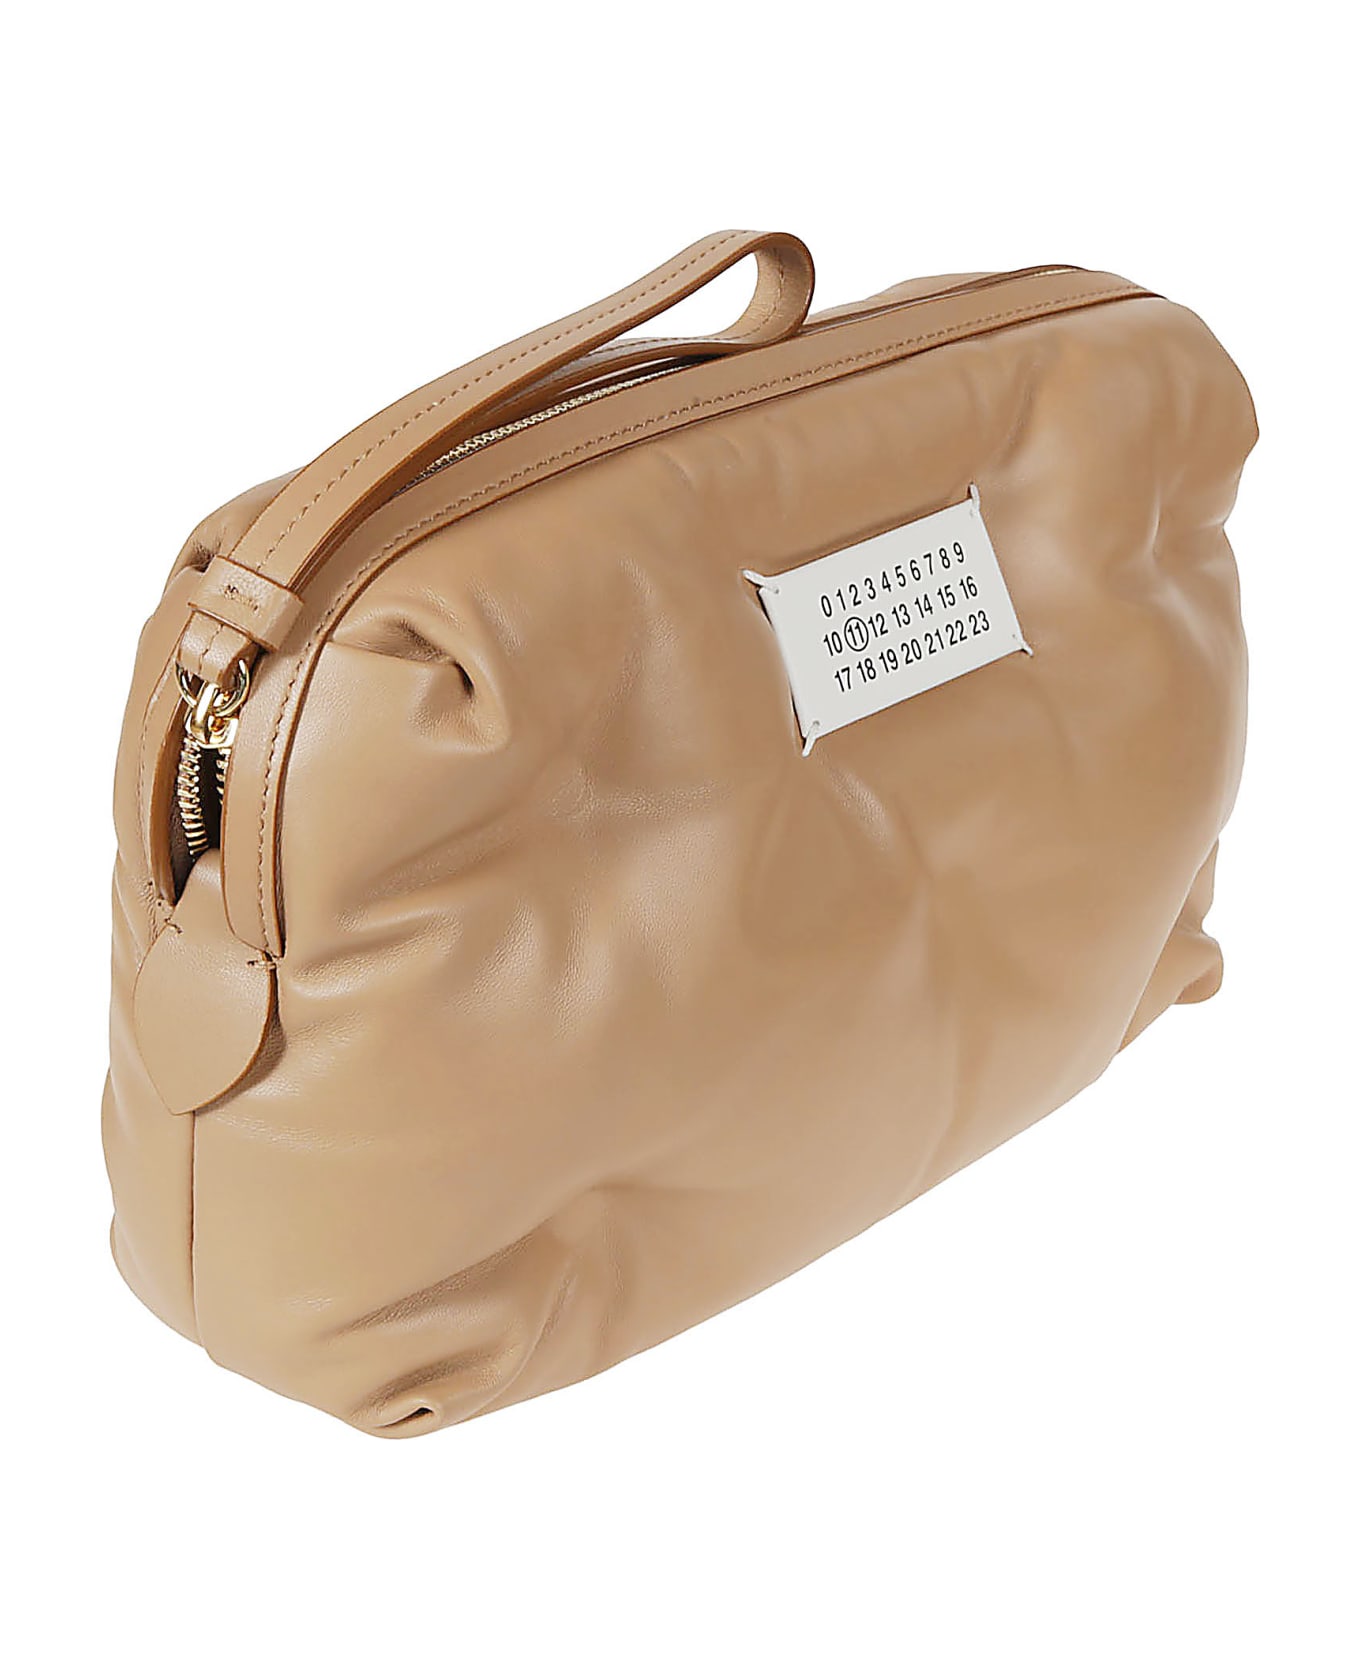 Maison Margiela Glam Slam Shoulder Bag - Natural